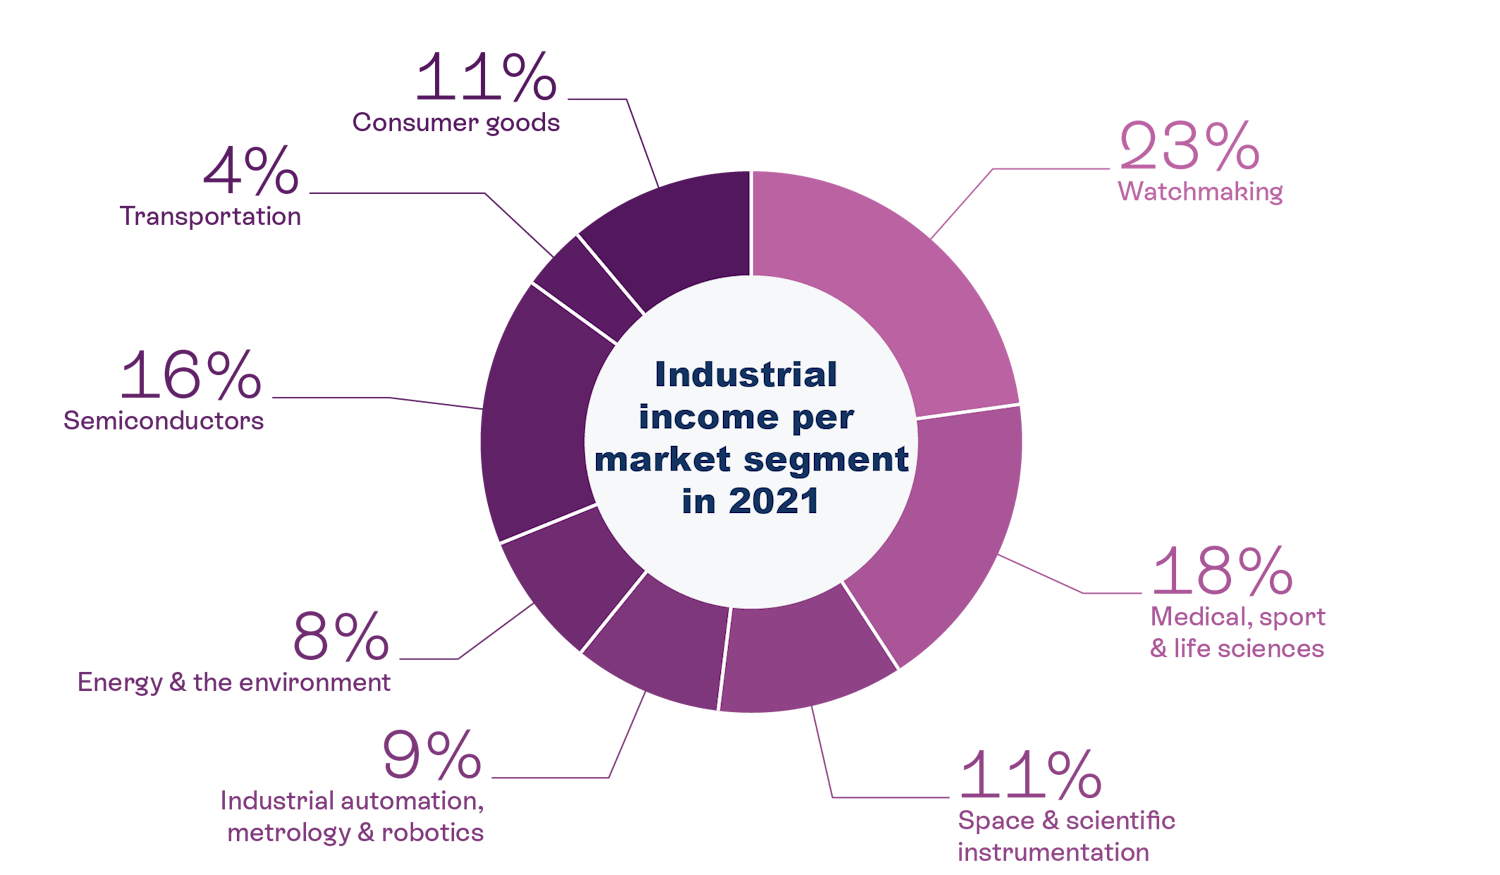 Industrial income per market segment in 2021